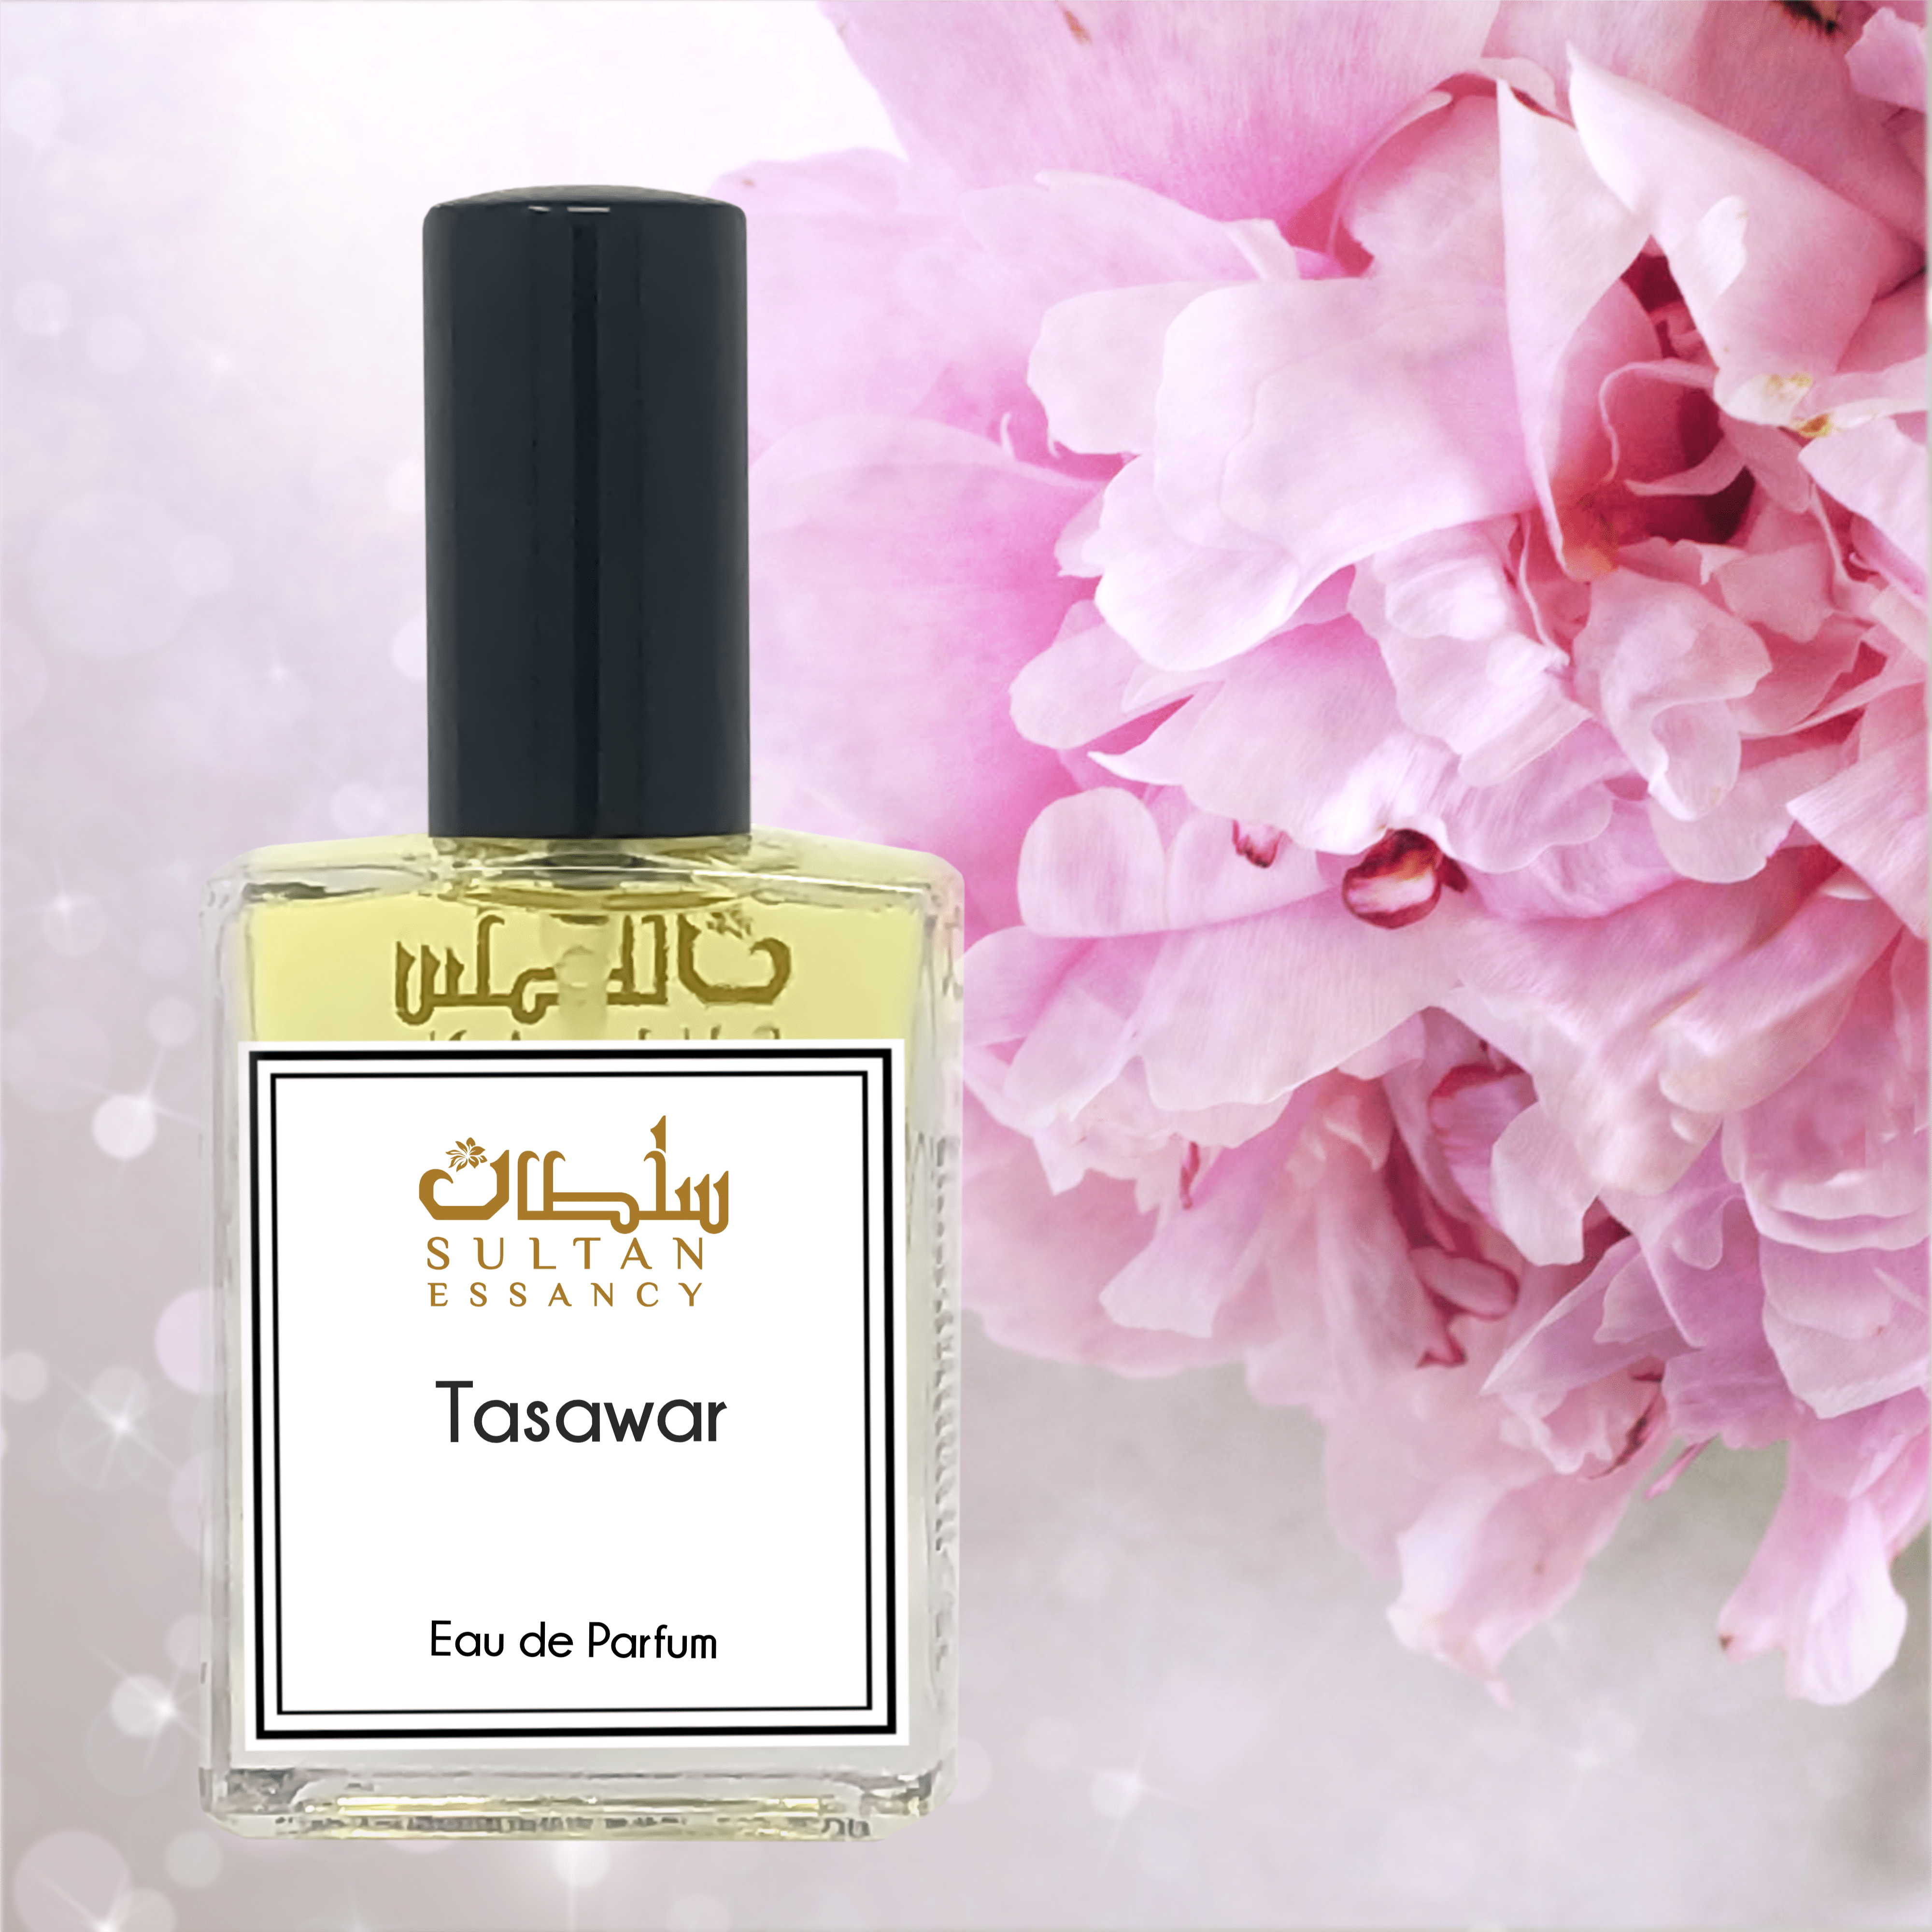 Sultan Essancy Tasawar Perfume For Women - Plenty Perfumes